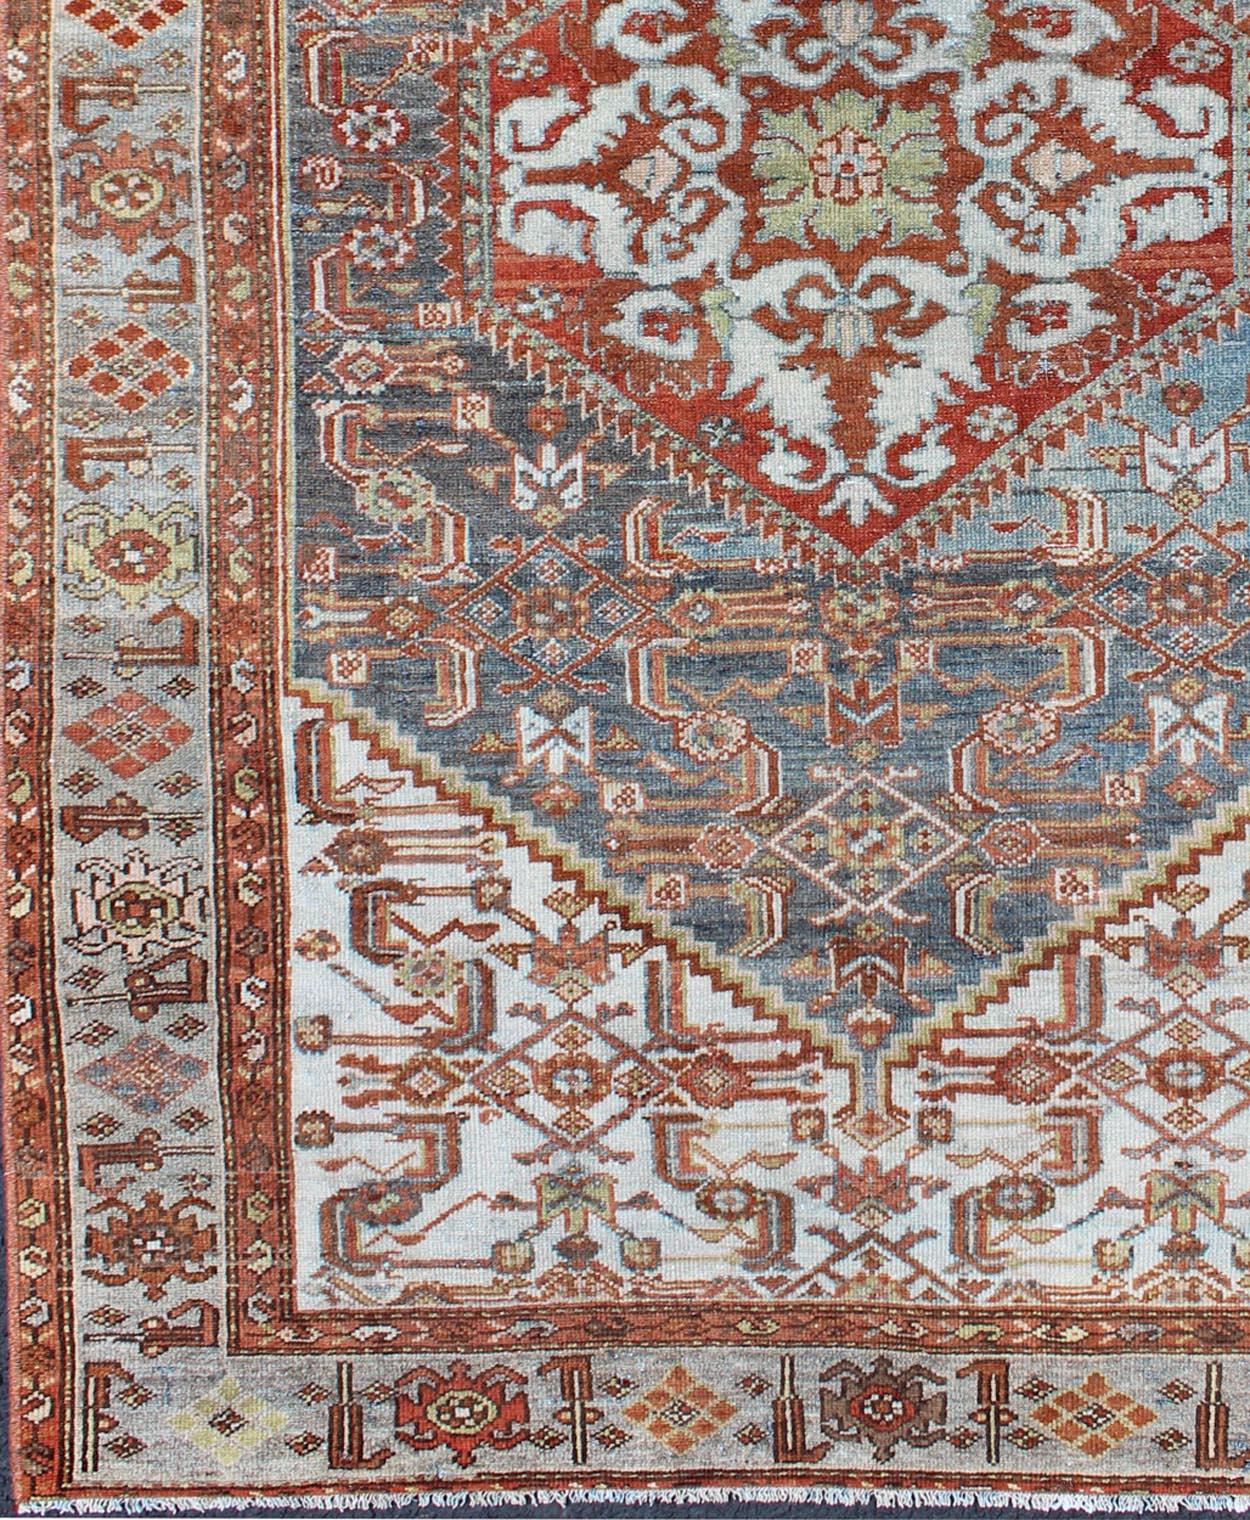 Persischer antiker Malayer-Teppich mit Medaillon-Muster in satten Tönen, Teppich sus-1807-299, Herkunftsland / Art: Iran / Malayer, um 1920.

Dieser schöne antike persische Malayer-Teppich aus dem frühen 20. Jahrhundert zeichnet sich durch ein